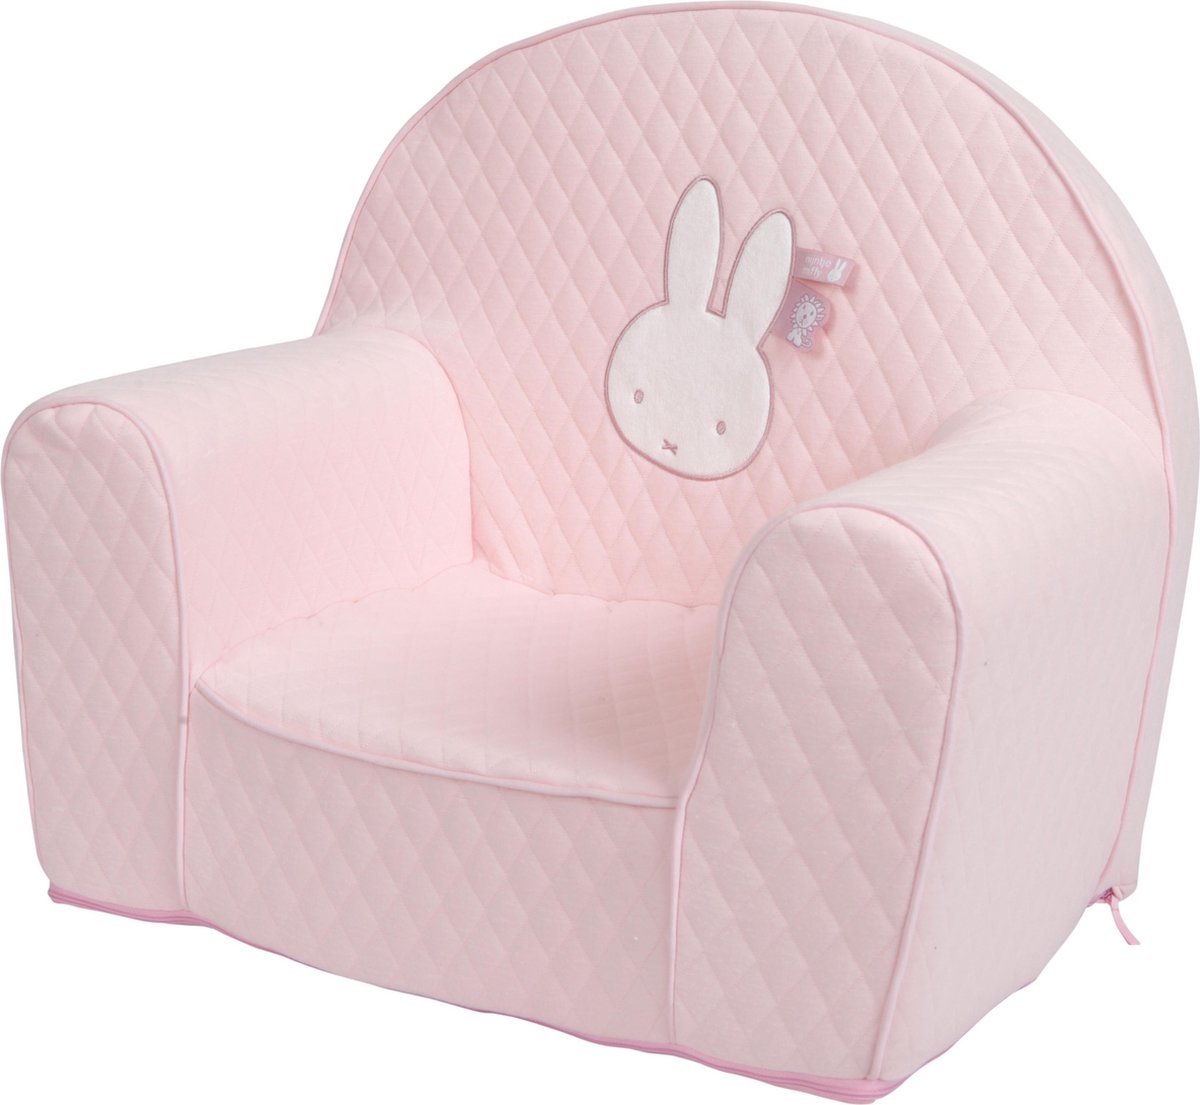 Tiamo Nijntje fauteuil - kinderstoeltje - Pink safari | bol.com